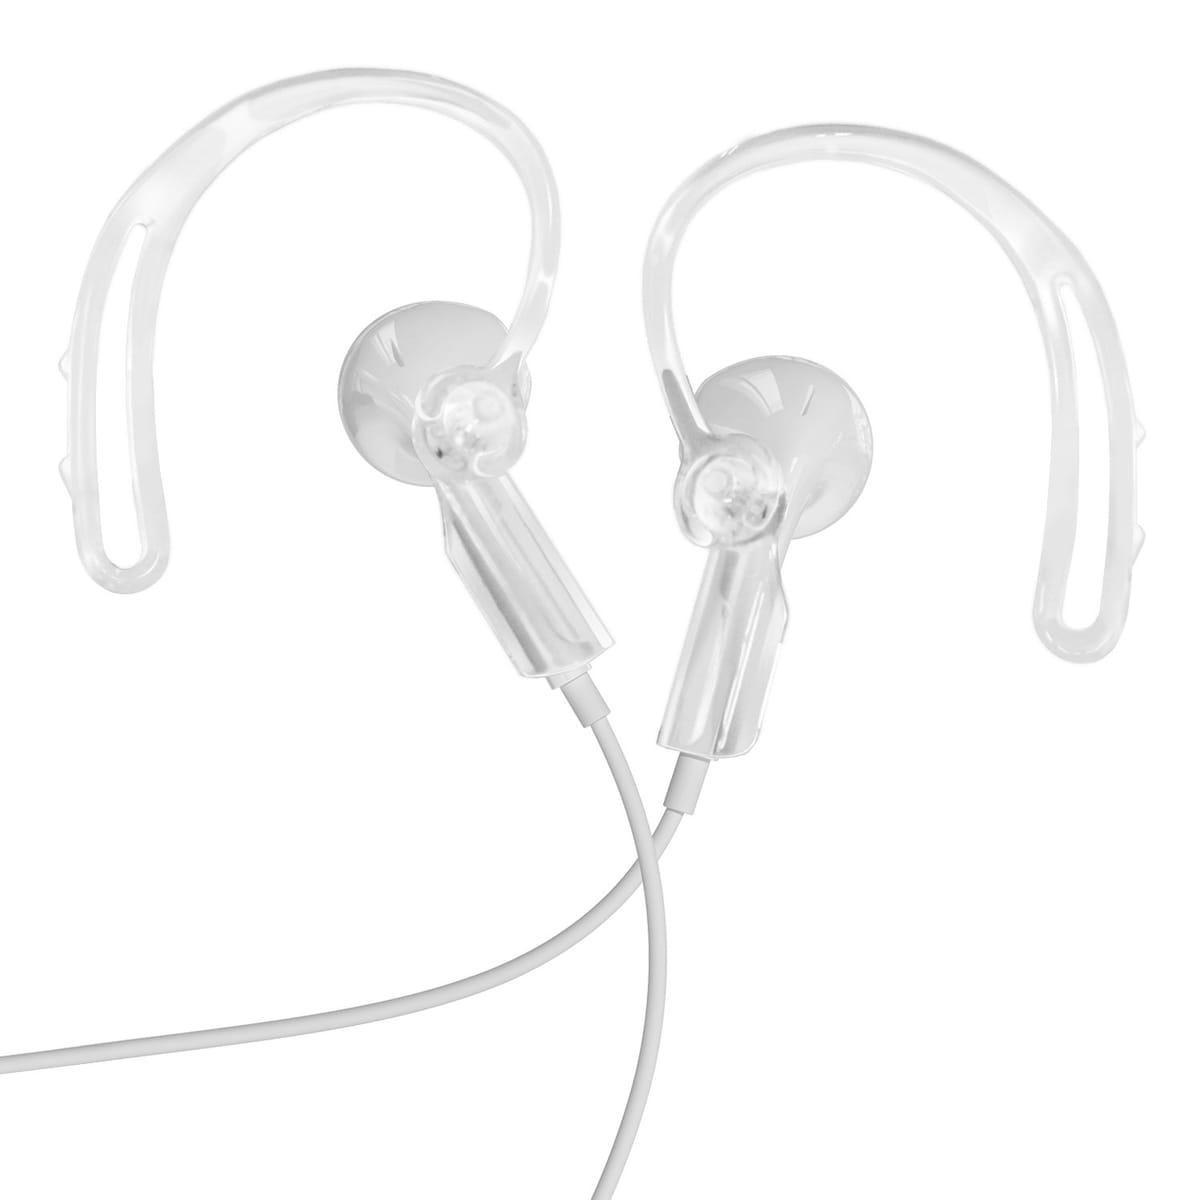 エレコム EarPods用 耳から外れにくい 落下防止イヤーフック クリア P-APEPHCR